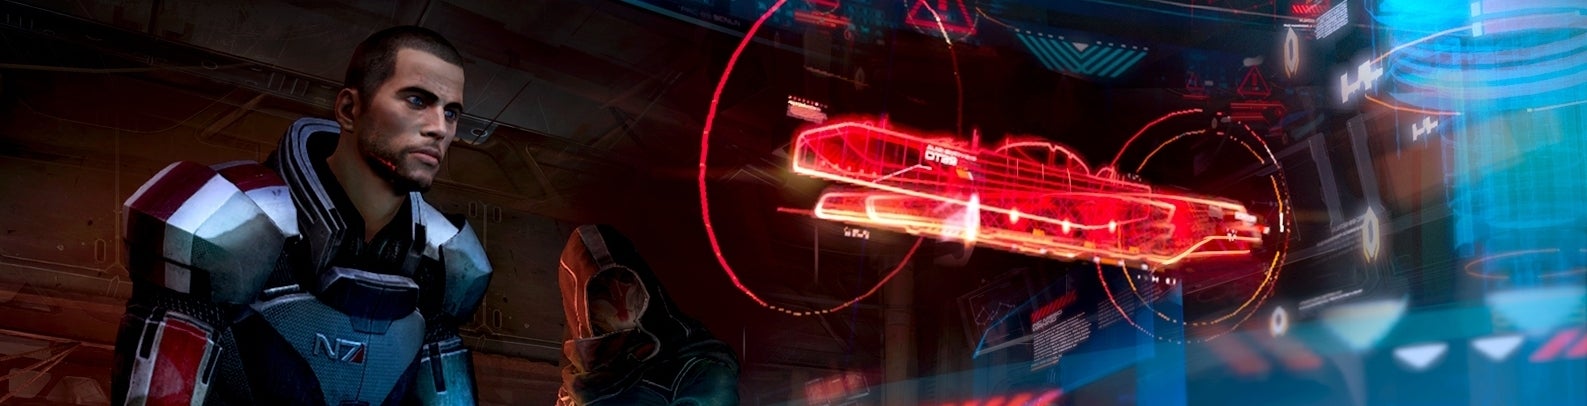 Image for Příští Mass Effect na Vánoce 2014 nebo v létě 2015